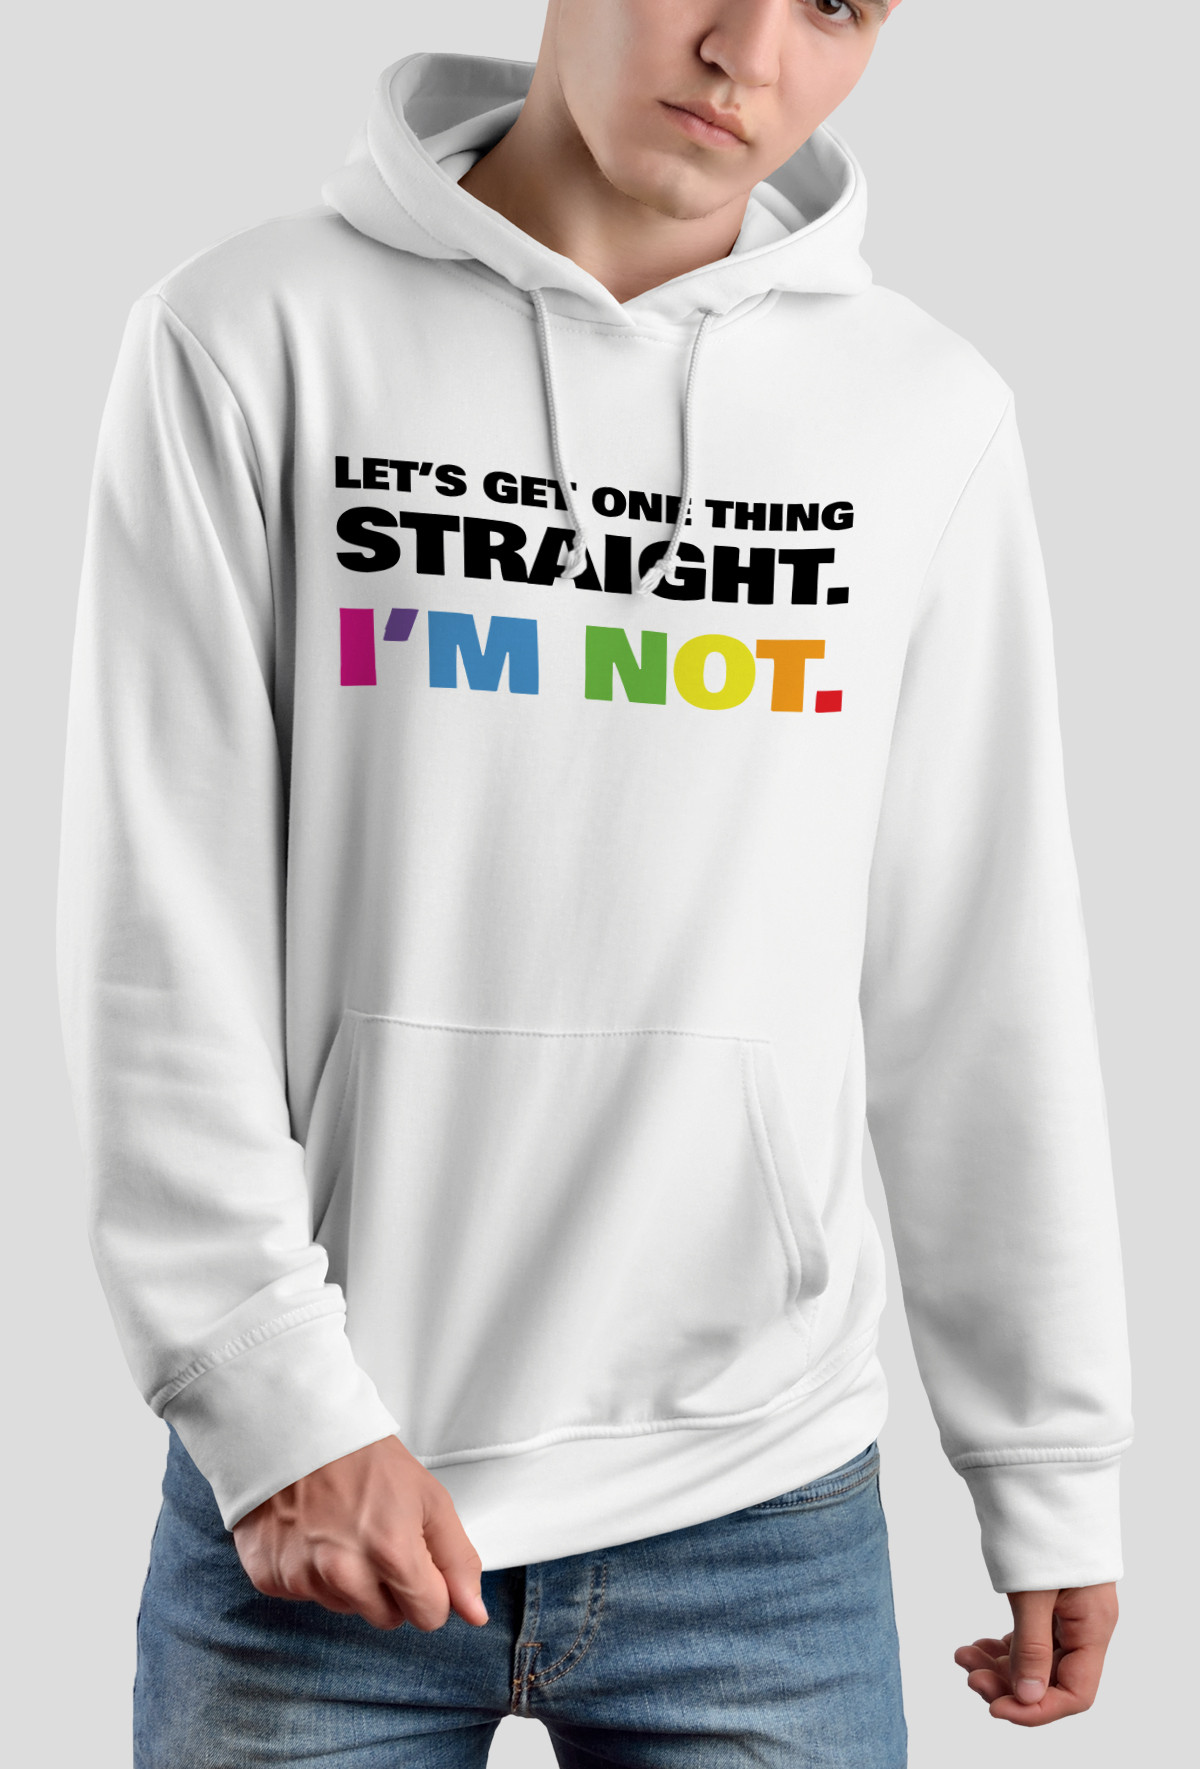 Bluza - Not Straight (Wyjątkowy prezent)